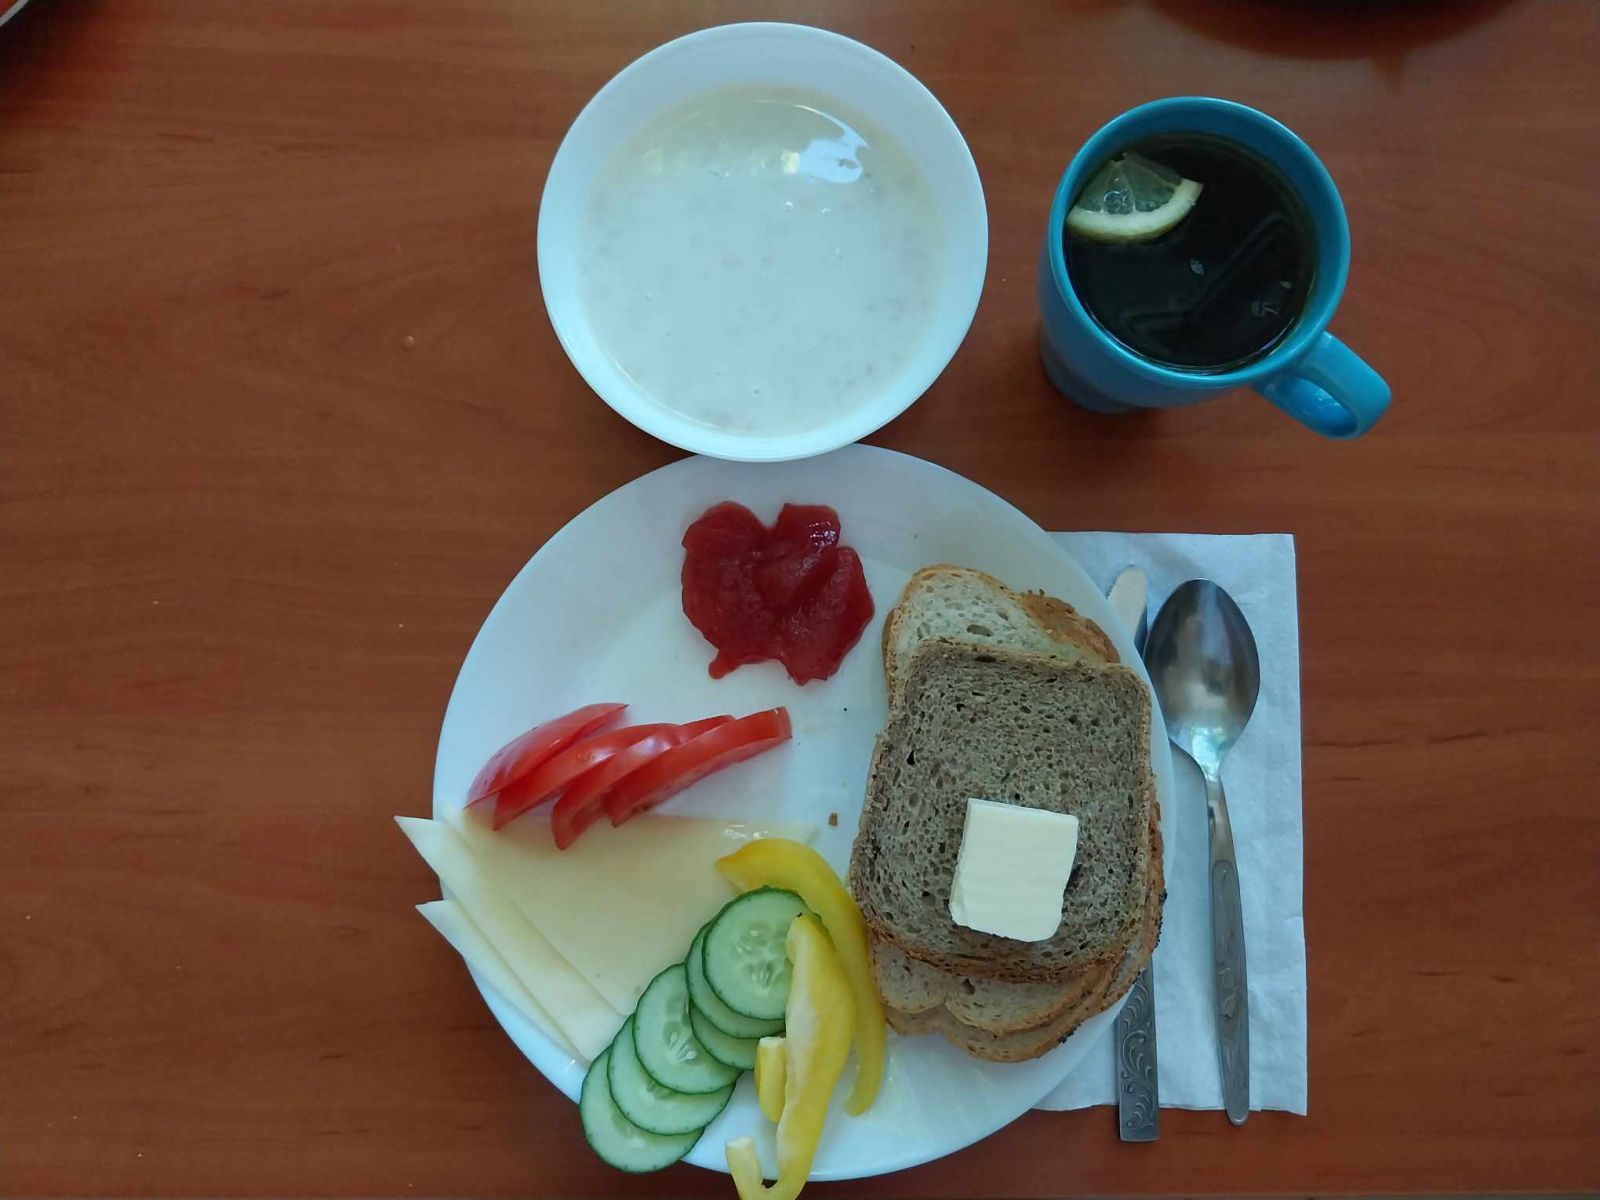 zupa mleczna, dżem, kanapki z serem i warzywami, herbata z cytryną